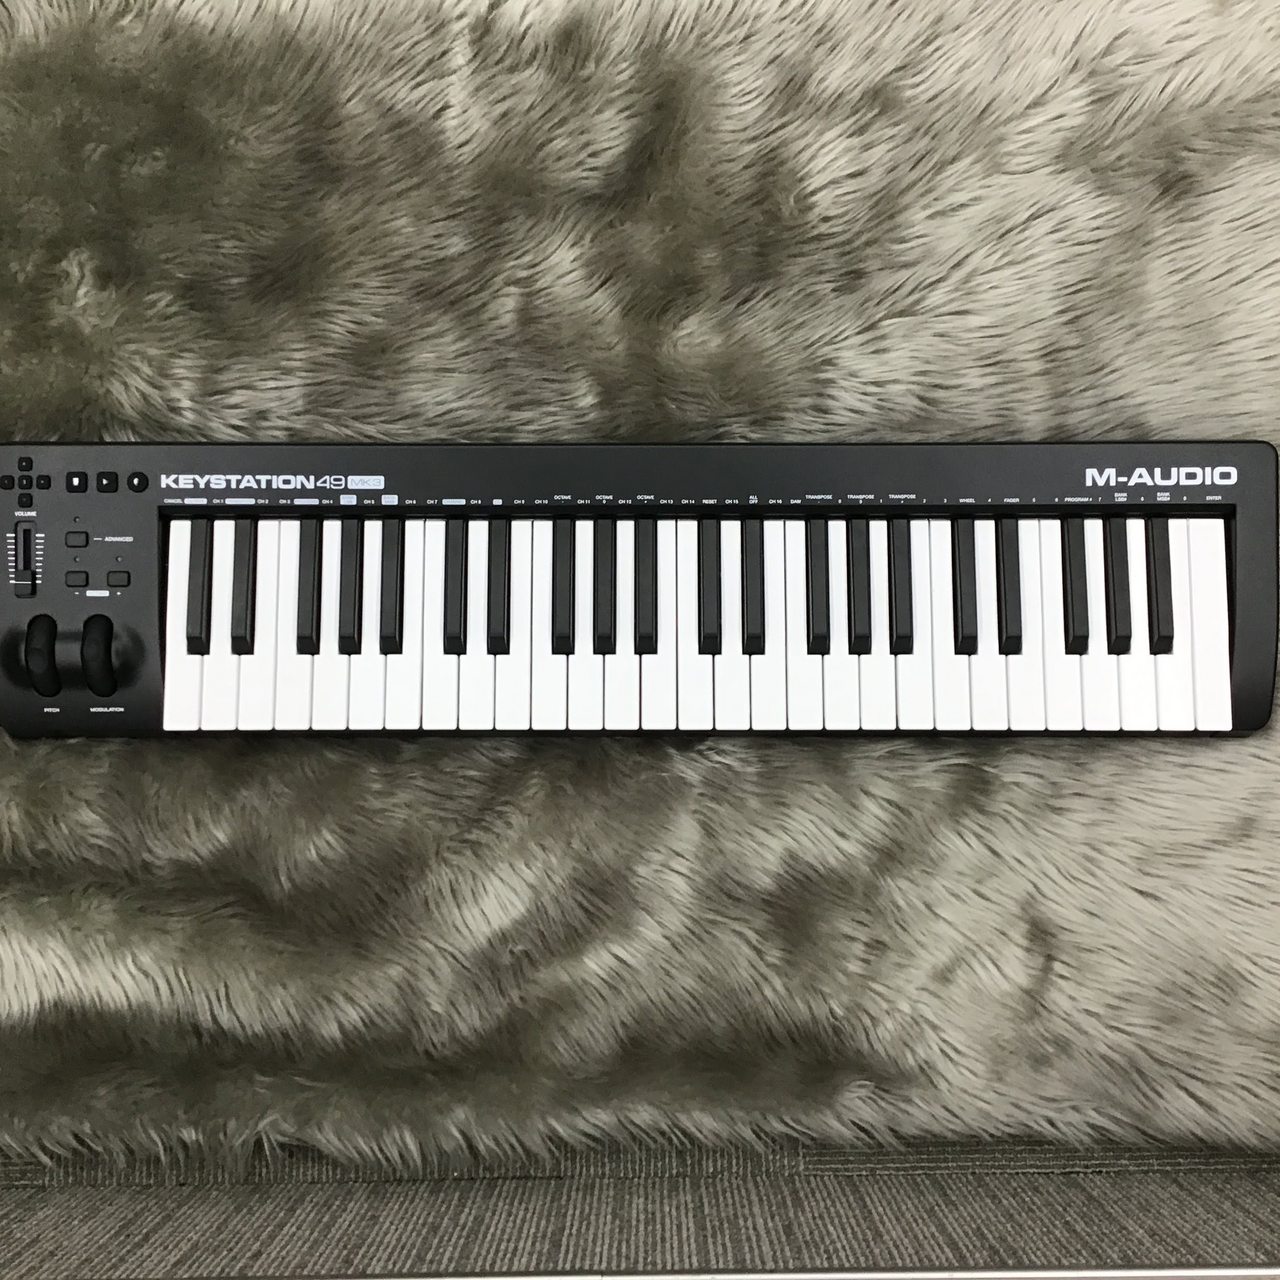 M-AUDIO Keystation 49 MK3 MIDIキーボード